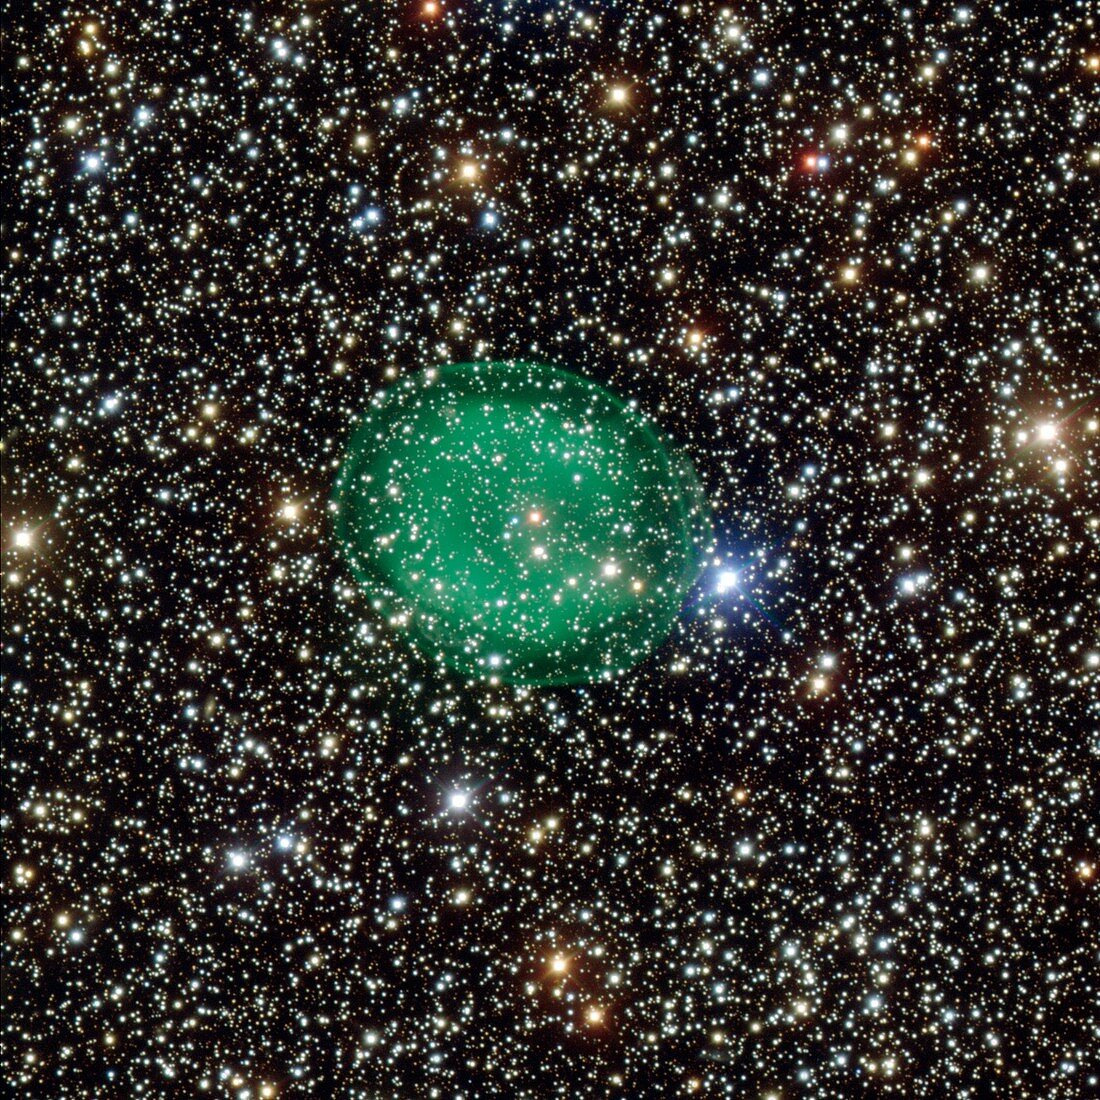 Planetary nebula IC 1295,telescope image